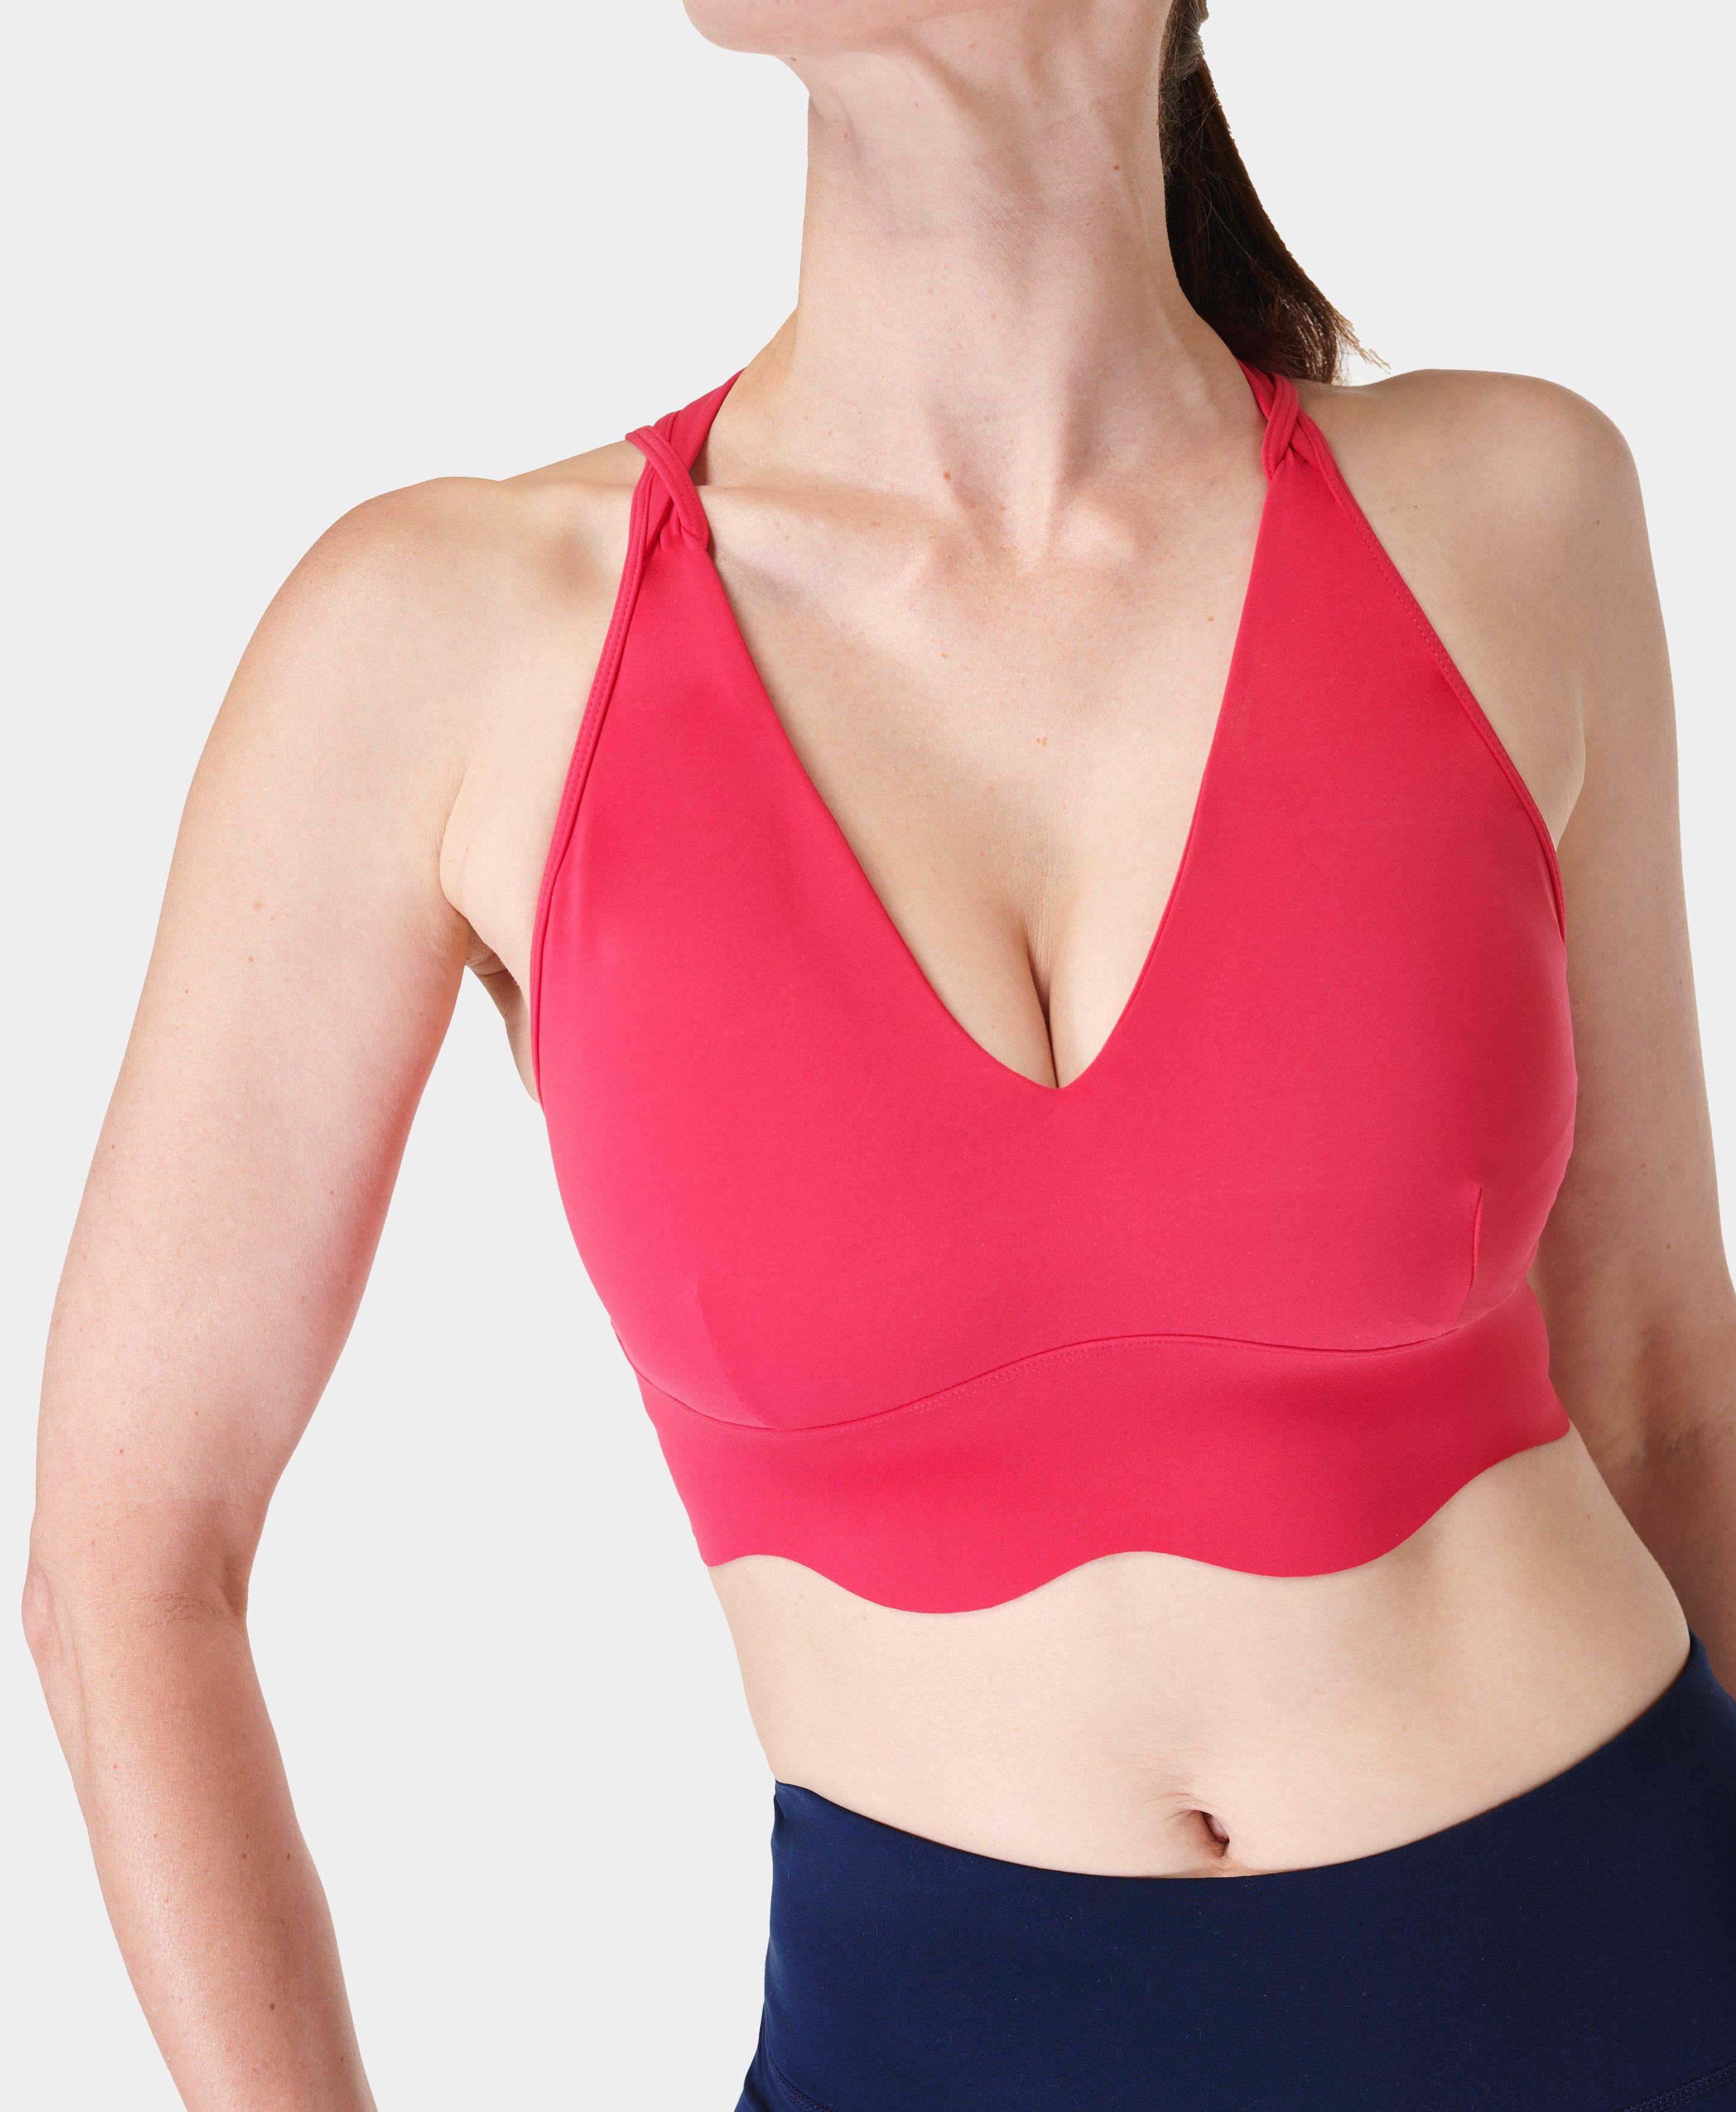 Sweaty Betty sports bra women's size medium pink  Low impact sports bra,  Women's sports bras, Sports bra